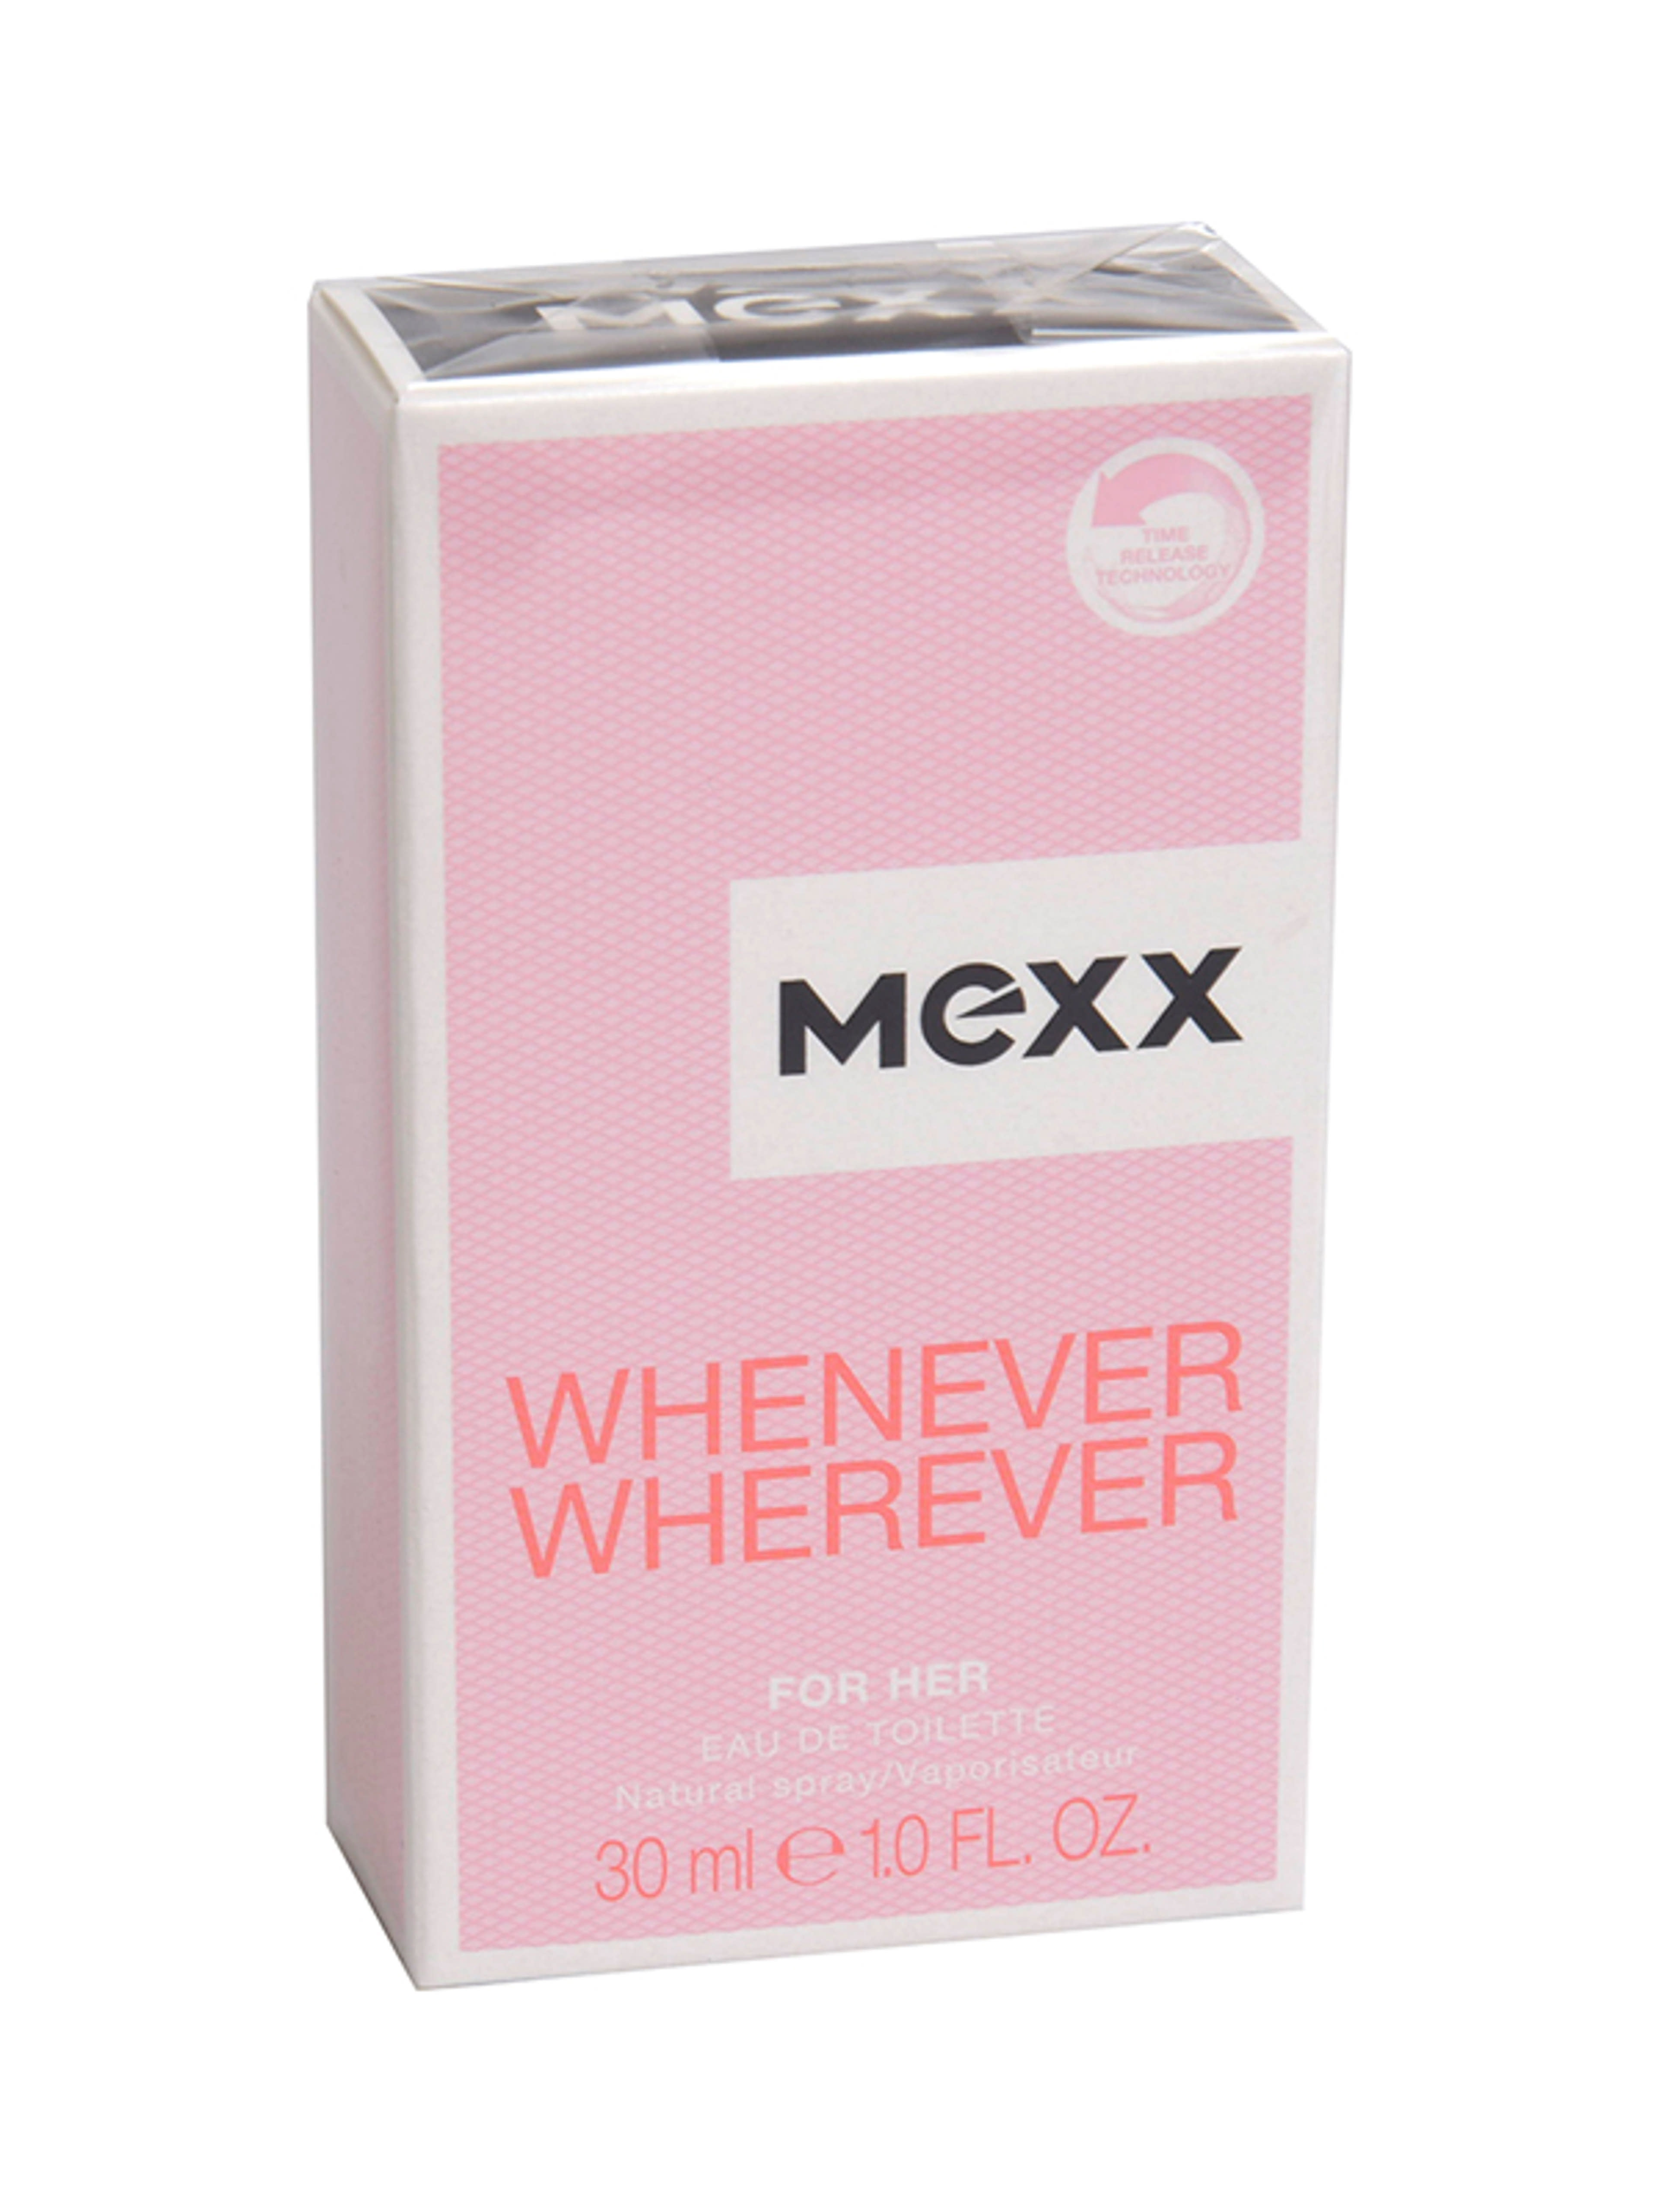 Mexx whenever wherever női eau de toilette - 30 ml-1